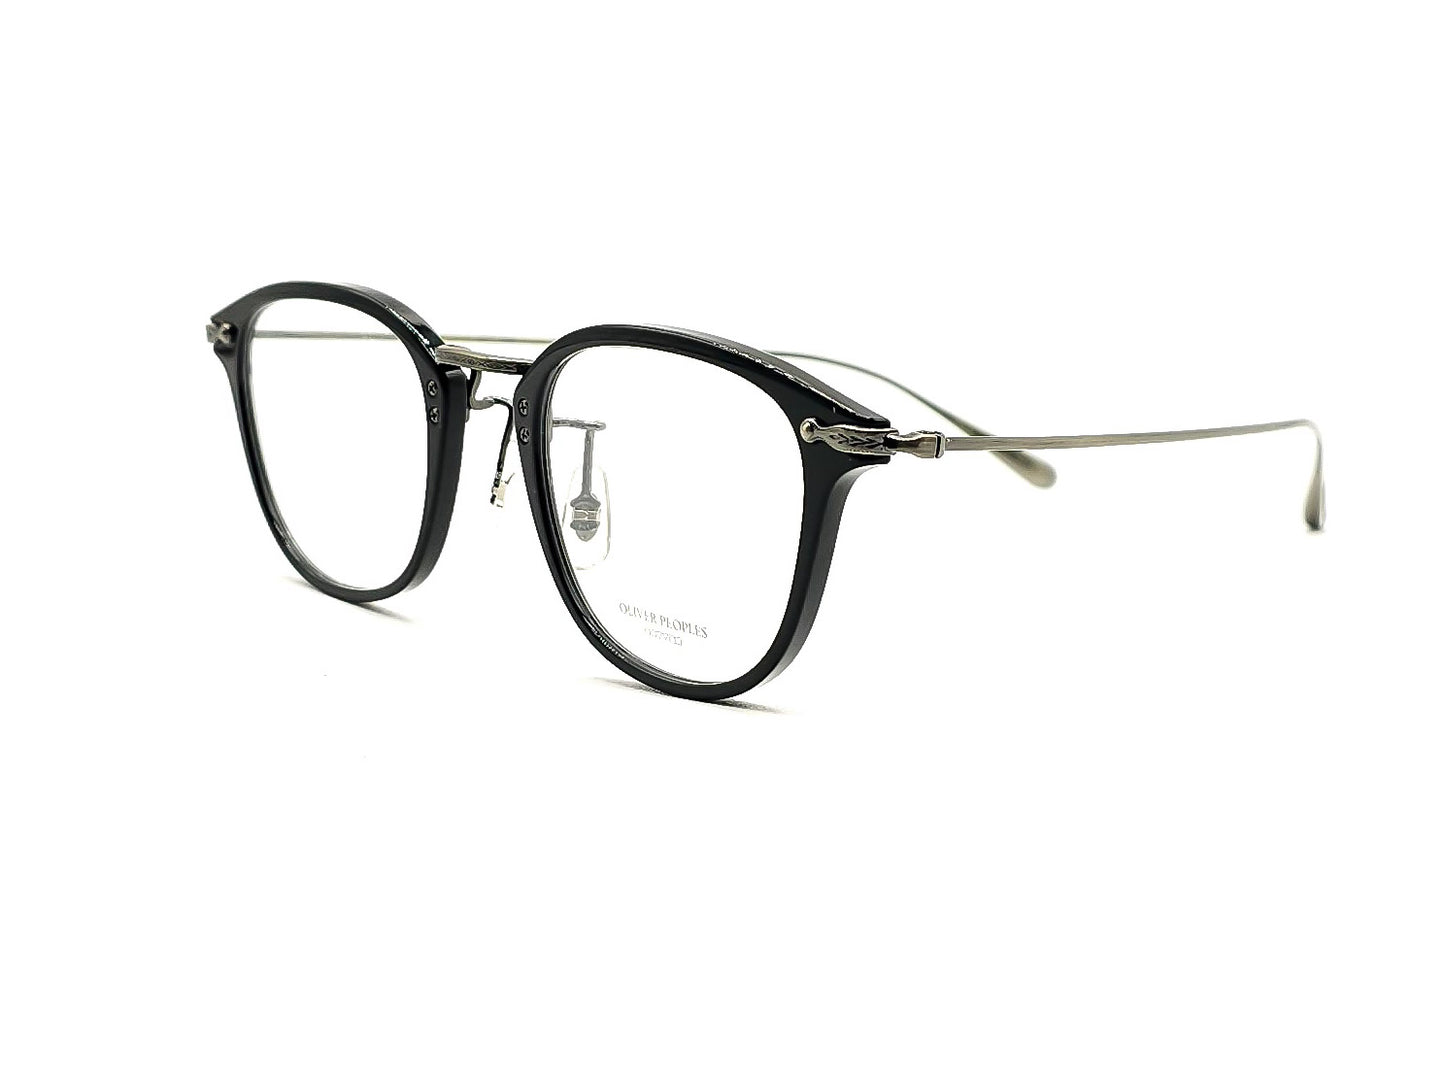 Oliver Peoples OV5389D Davitt eyeglasses 1005 Black-Pewter size 48